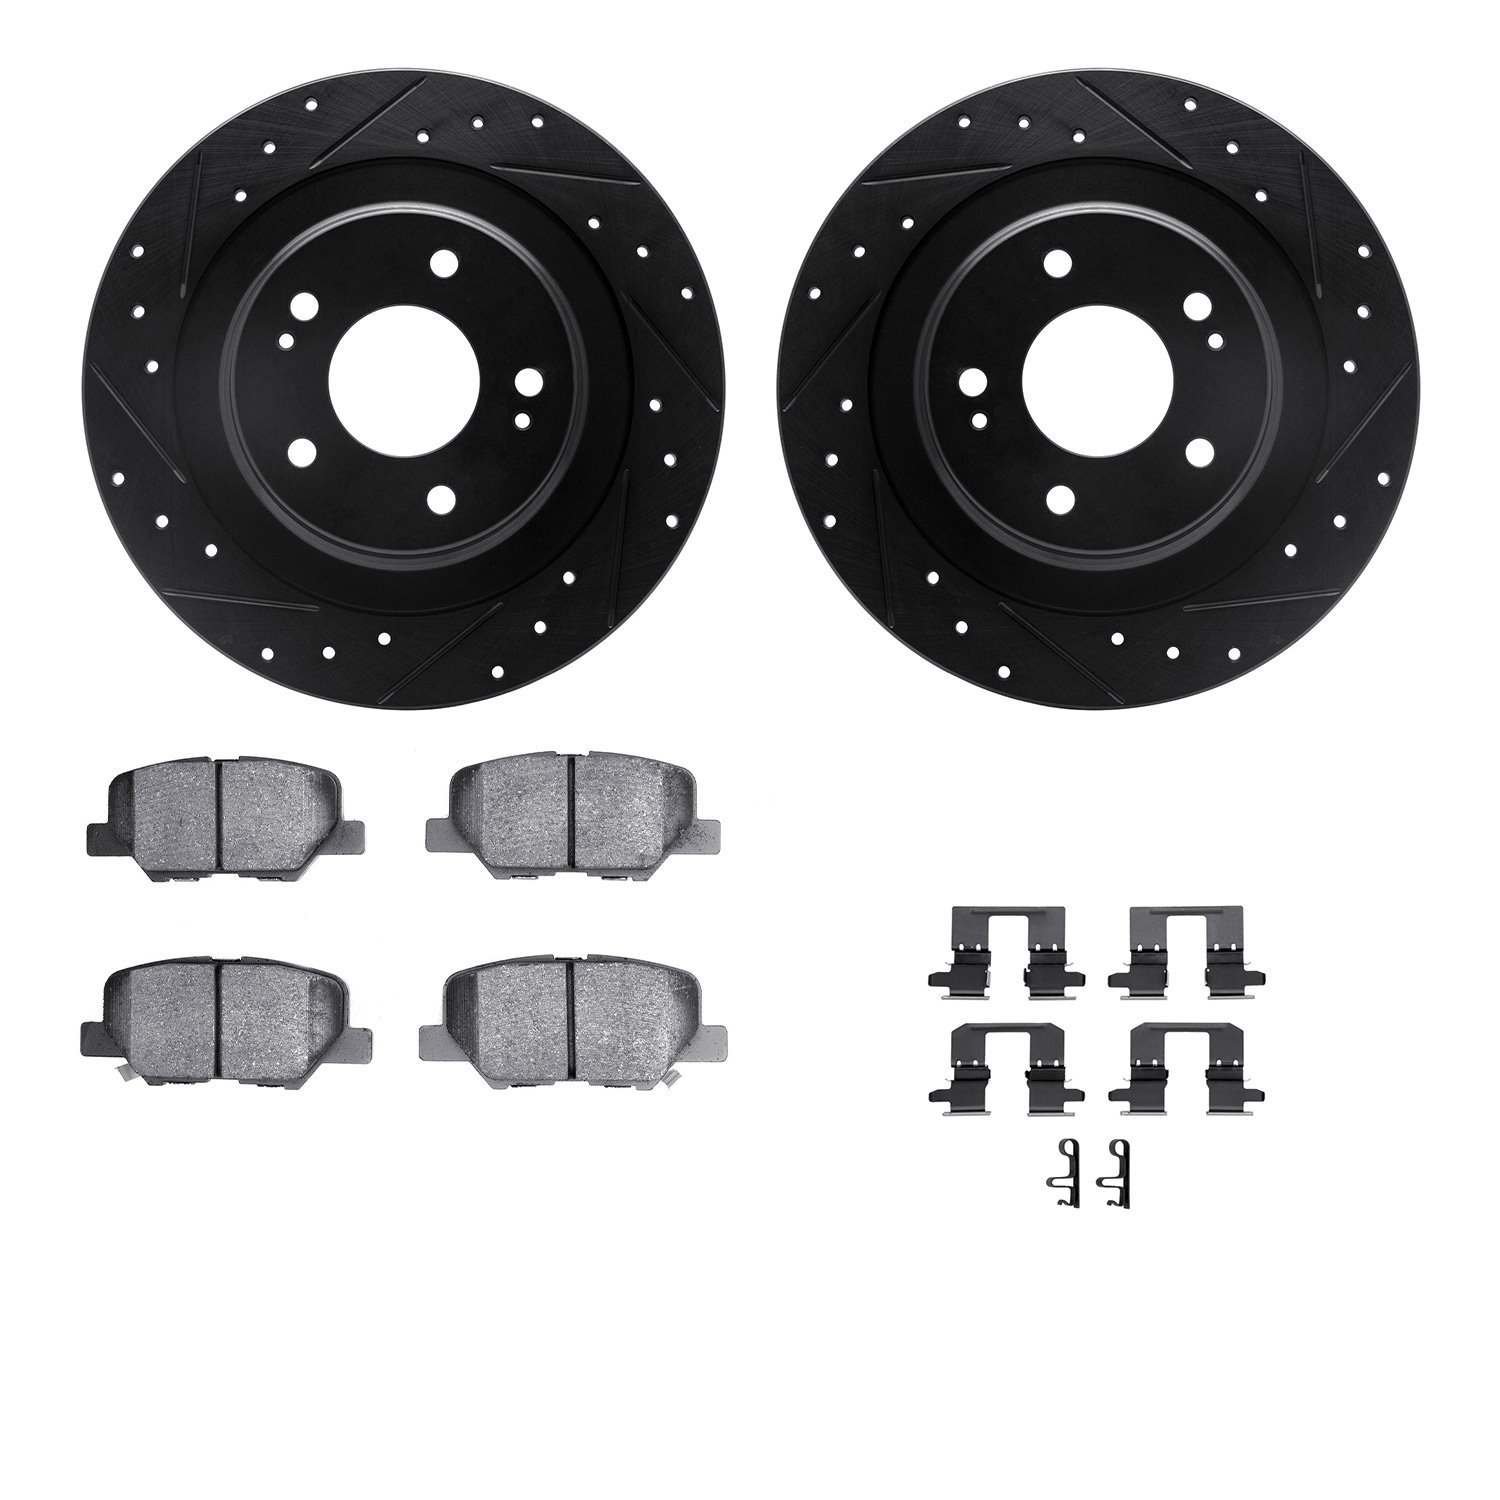 8312-72087 Drilled/Slotted Brake Rotors with 3000-Series Ceramic Brake Pads Kit & Hardware [Black], Fits Select Mitsubishi, Posi